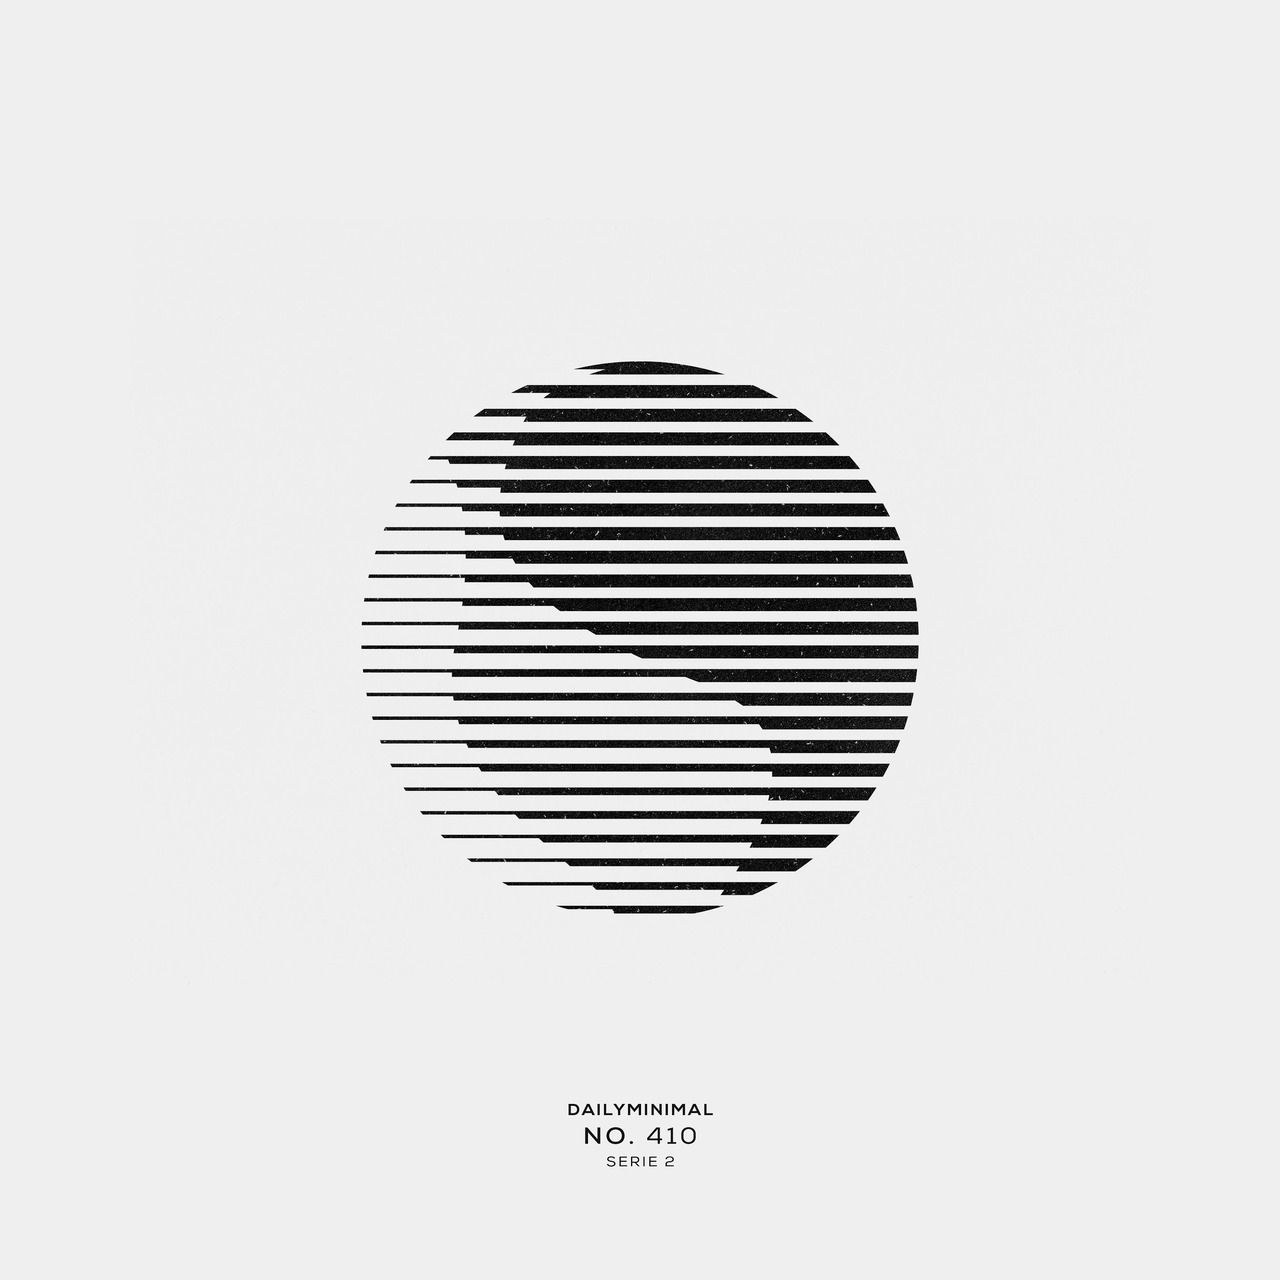 Pin by Luke Ratcliffe on Design | Minimal art design, Circle logo